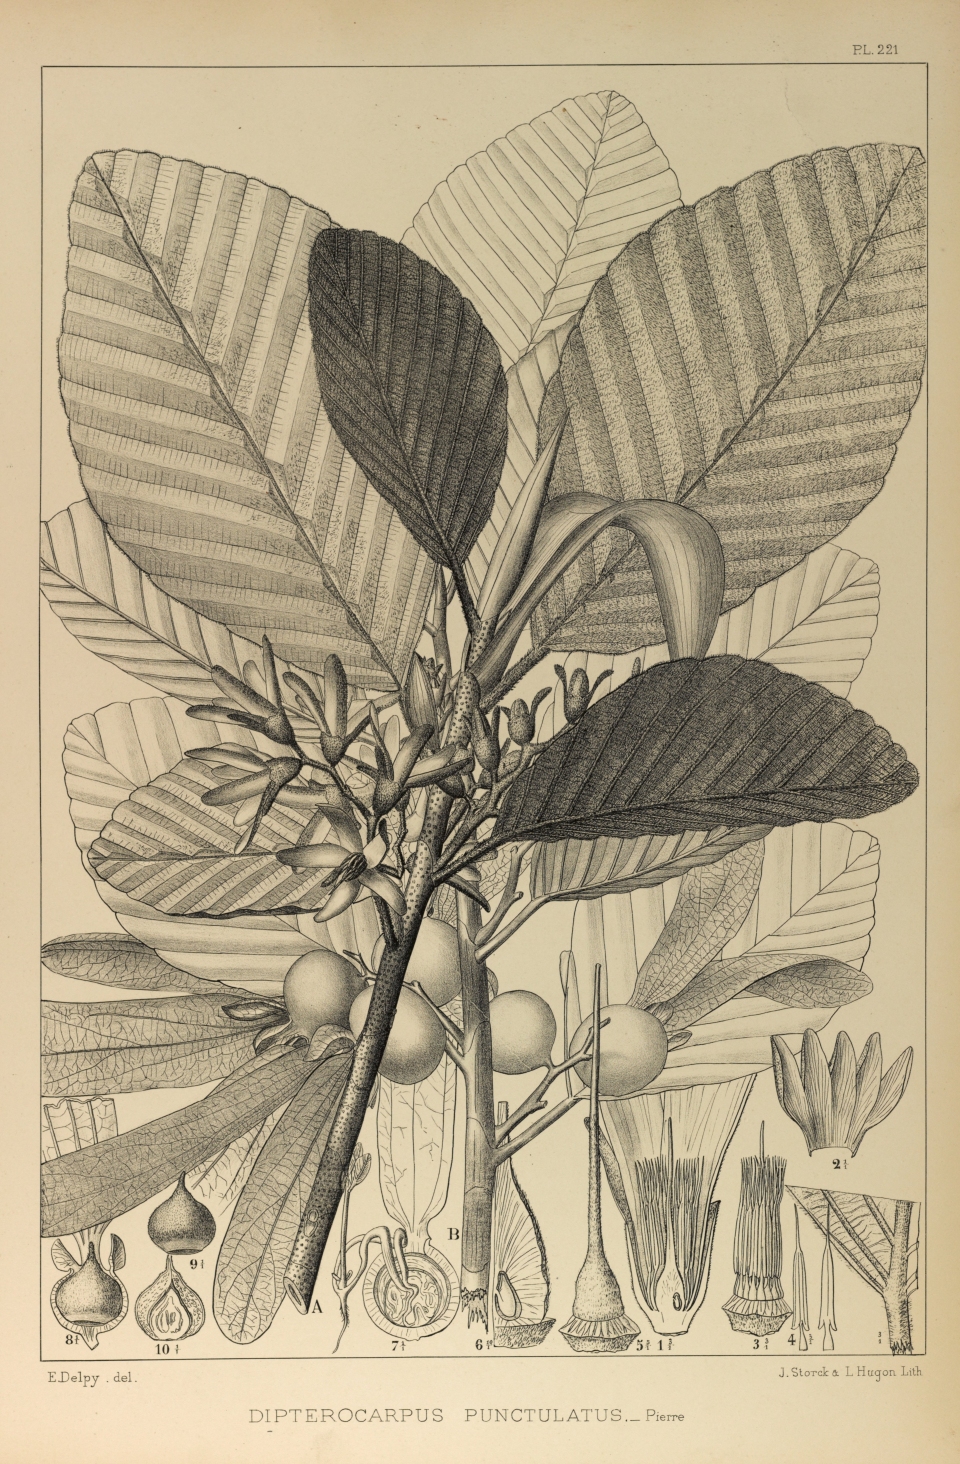 Dipterocarpus obtusifolius